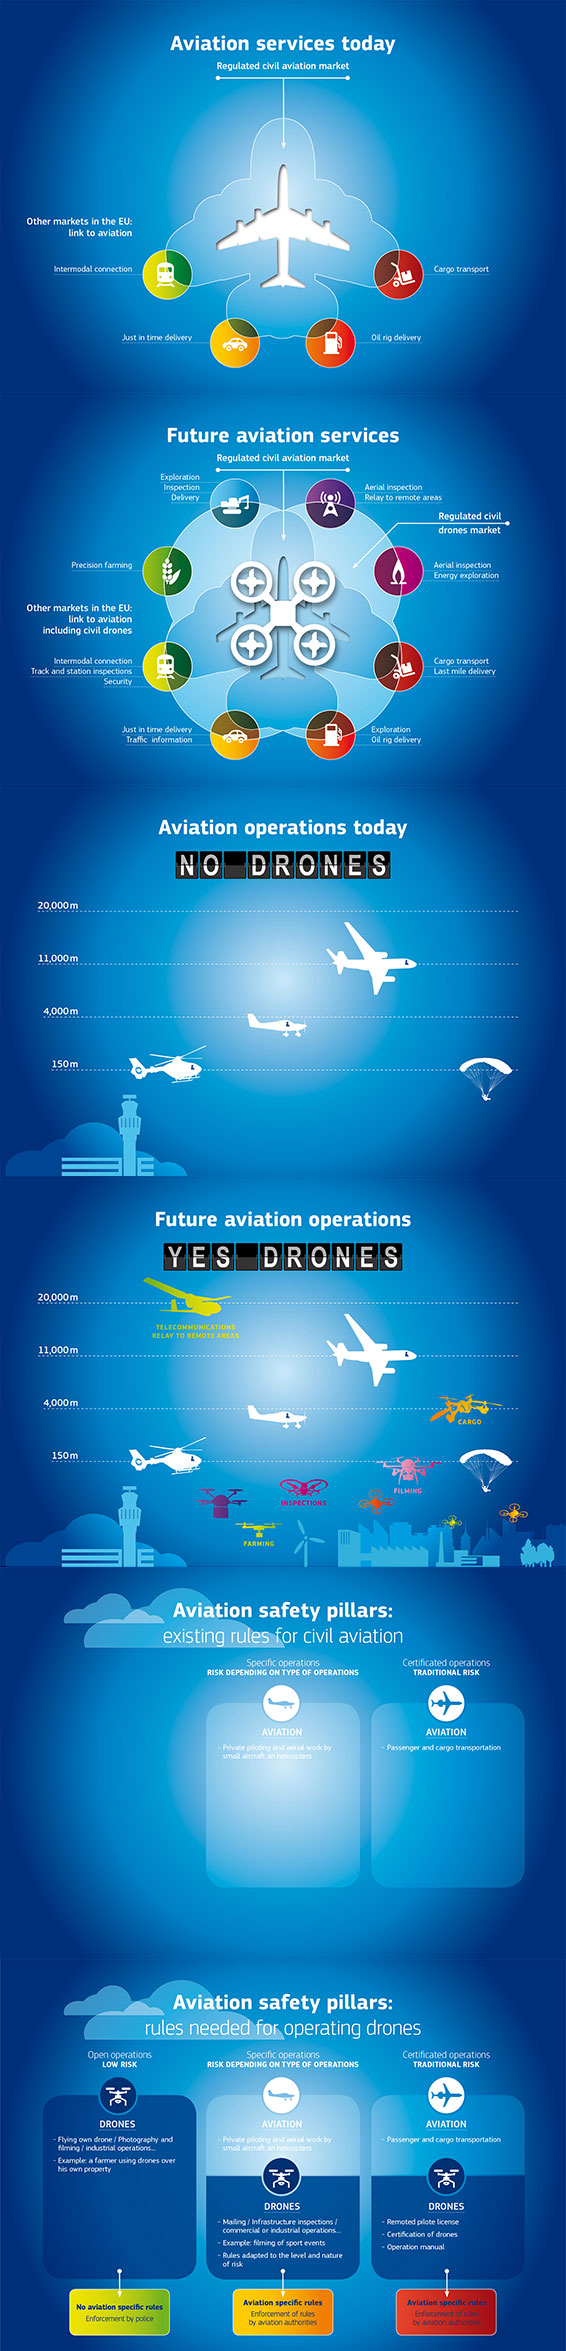 drones-infographic